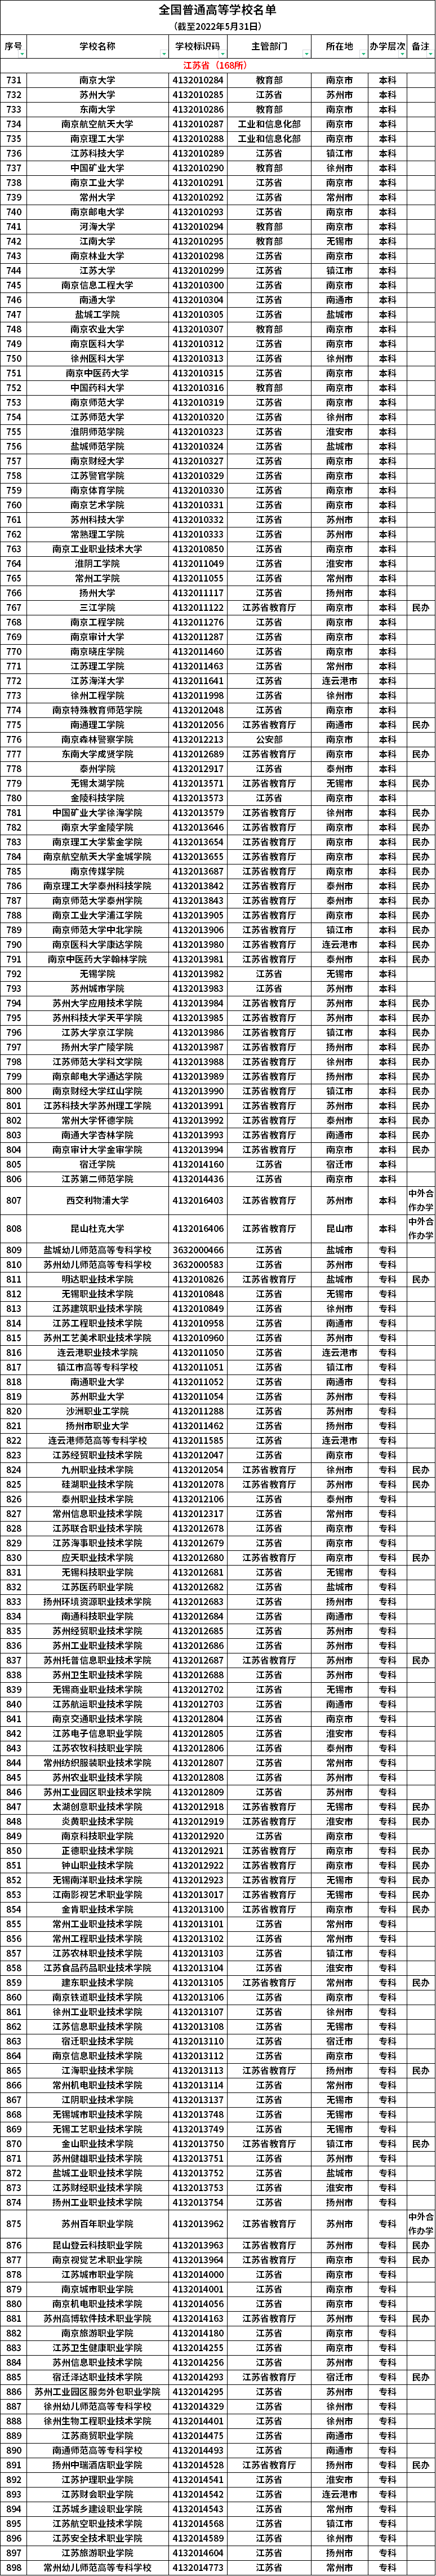 江苏普通高等学校名单